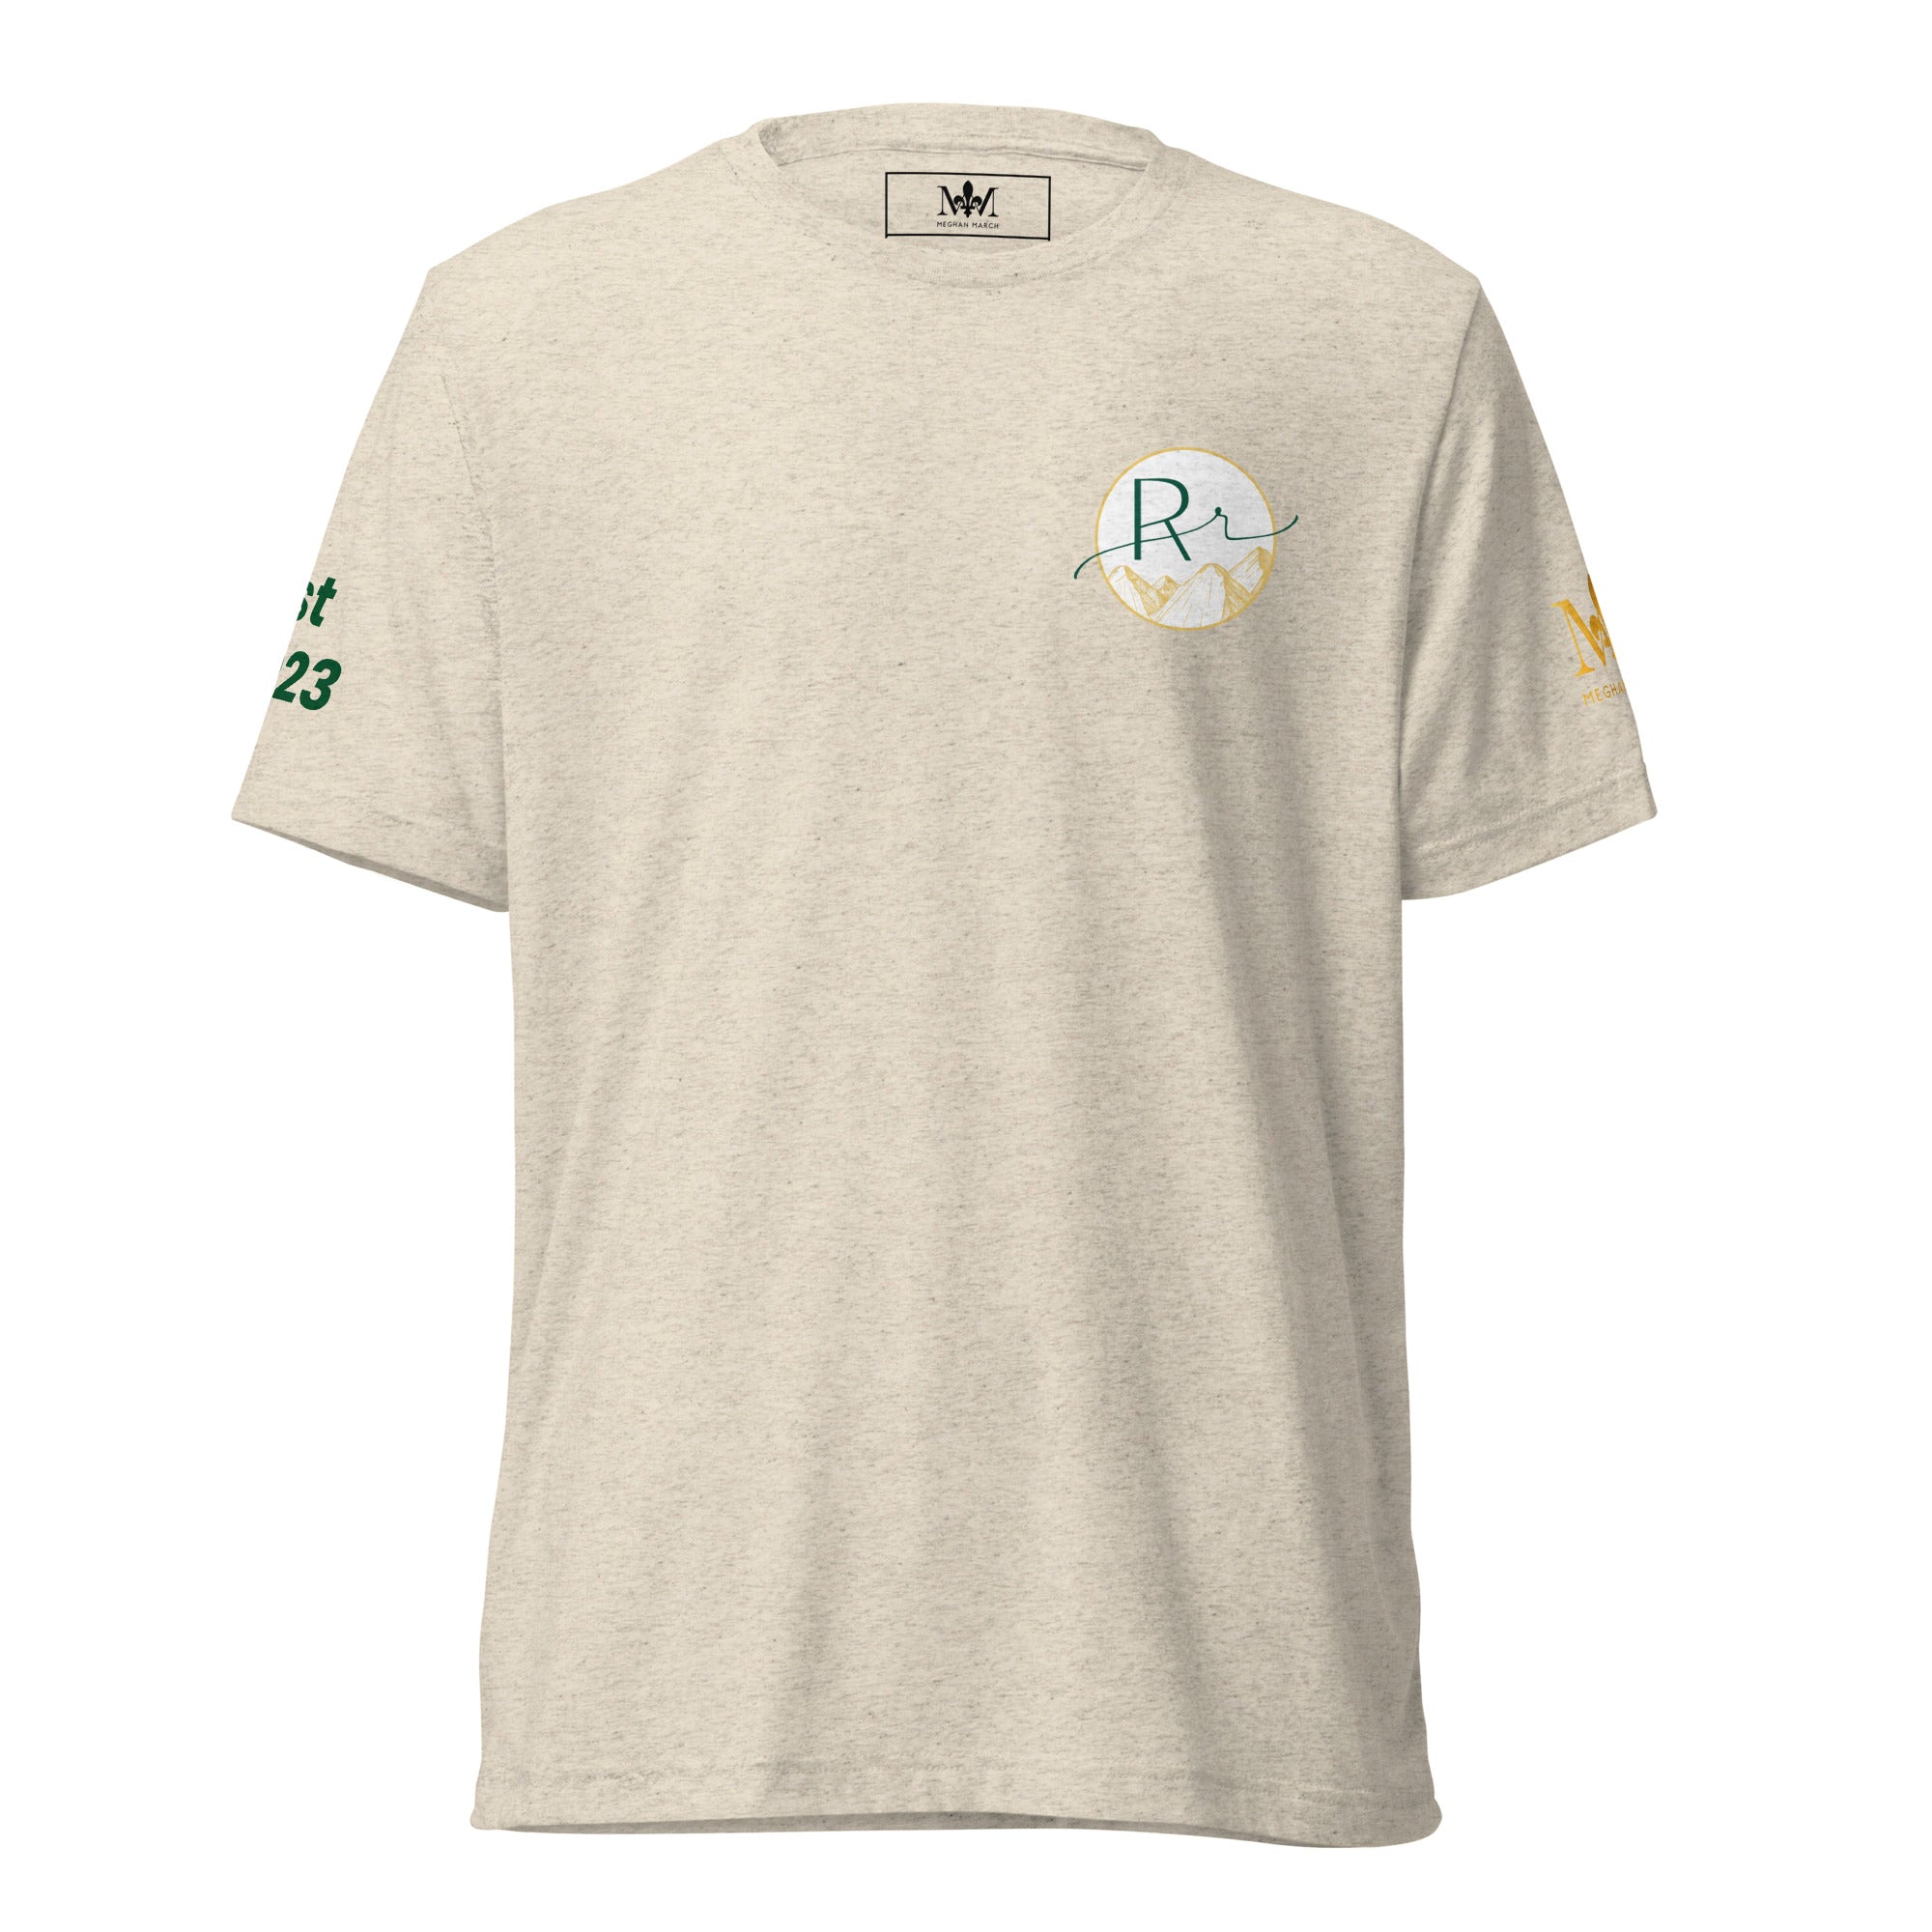 Rebels + Runaways T-Shirt